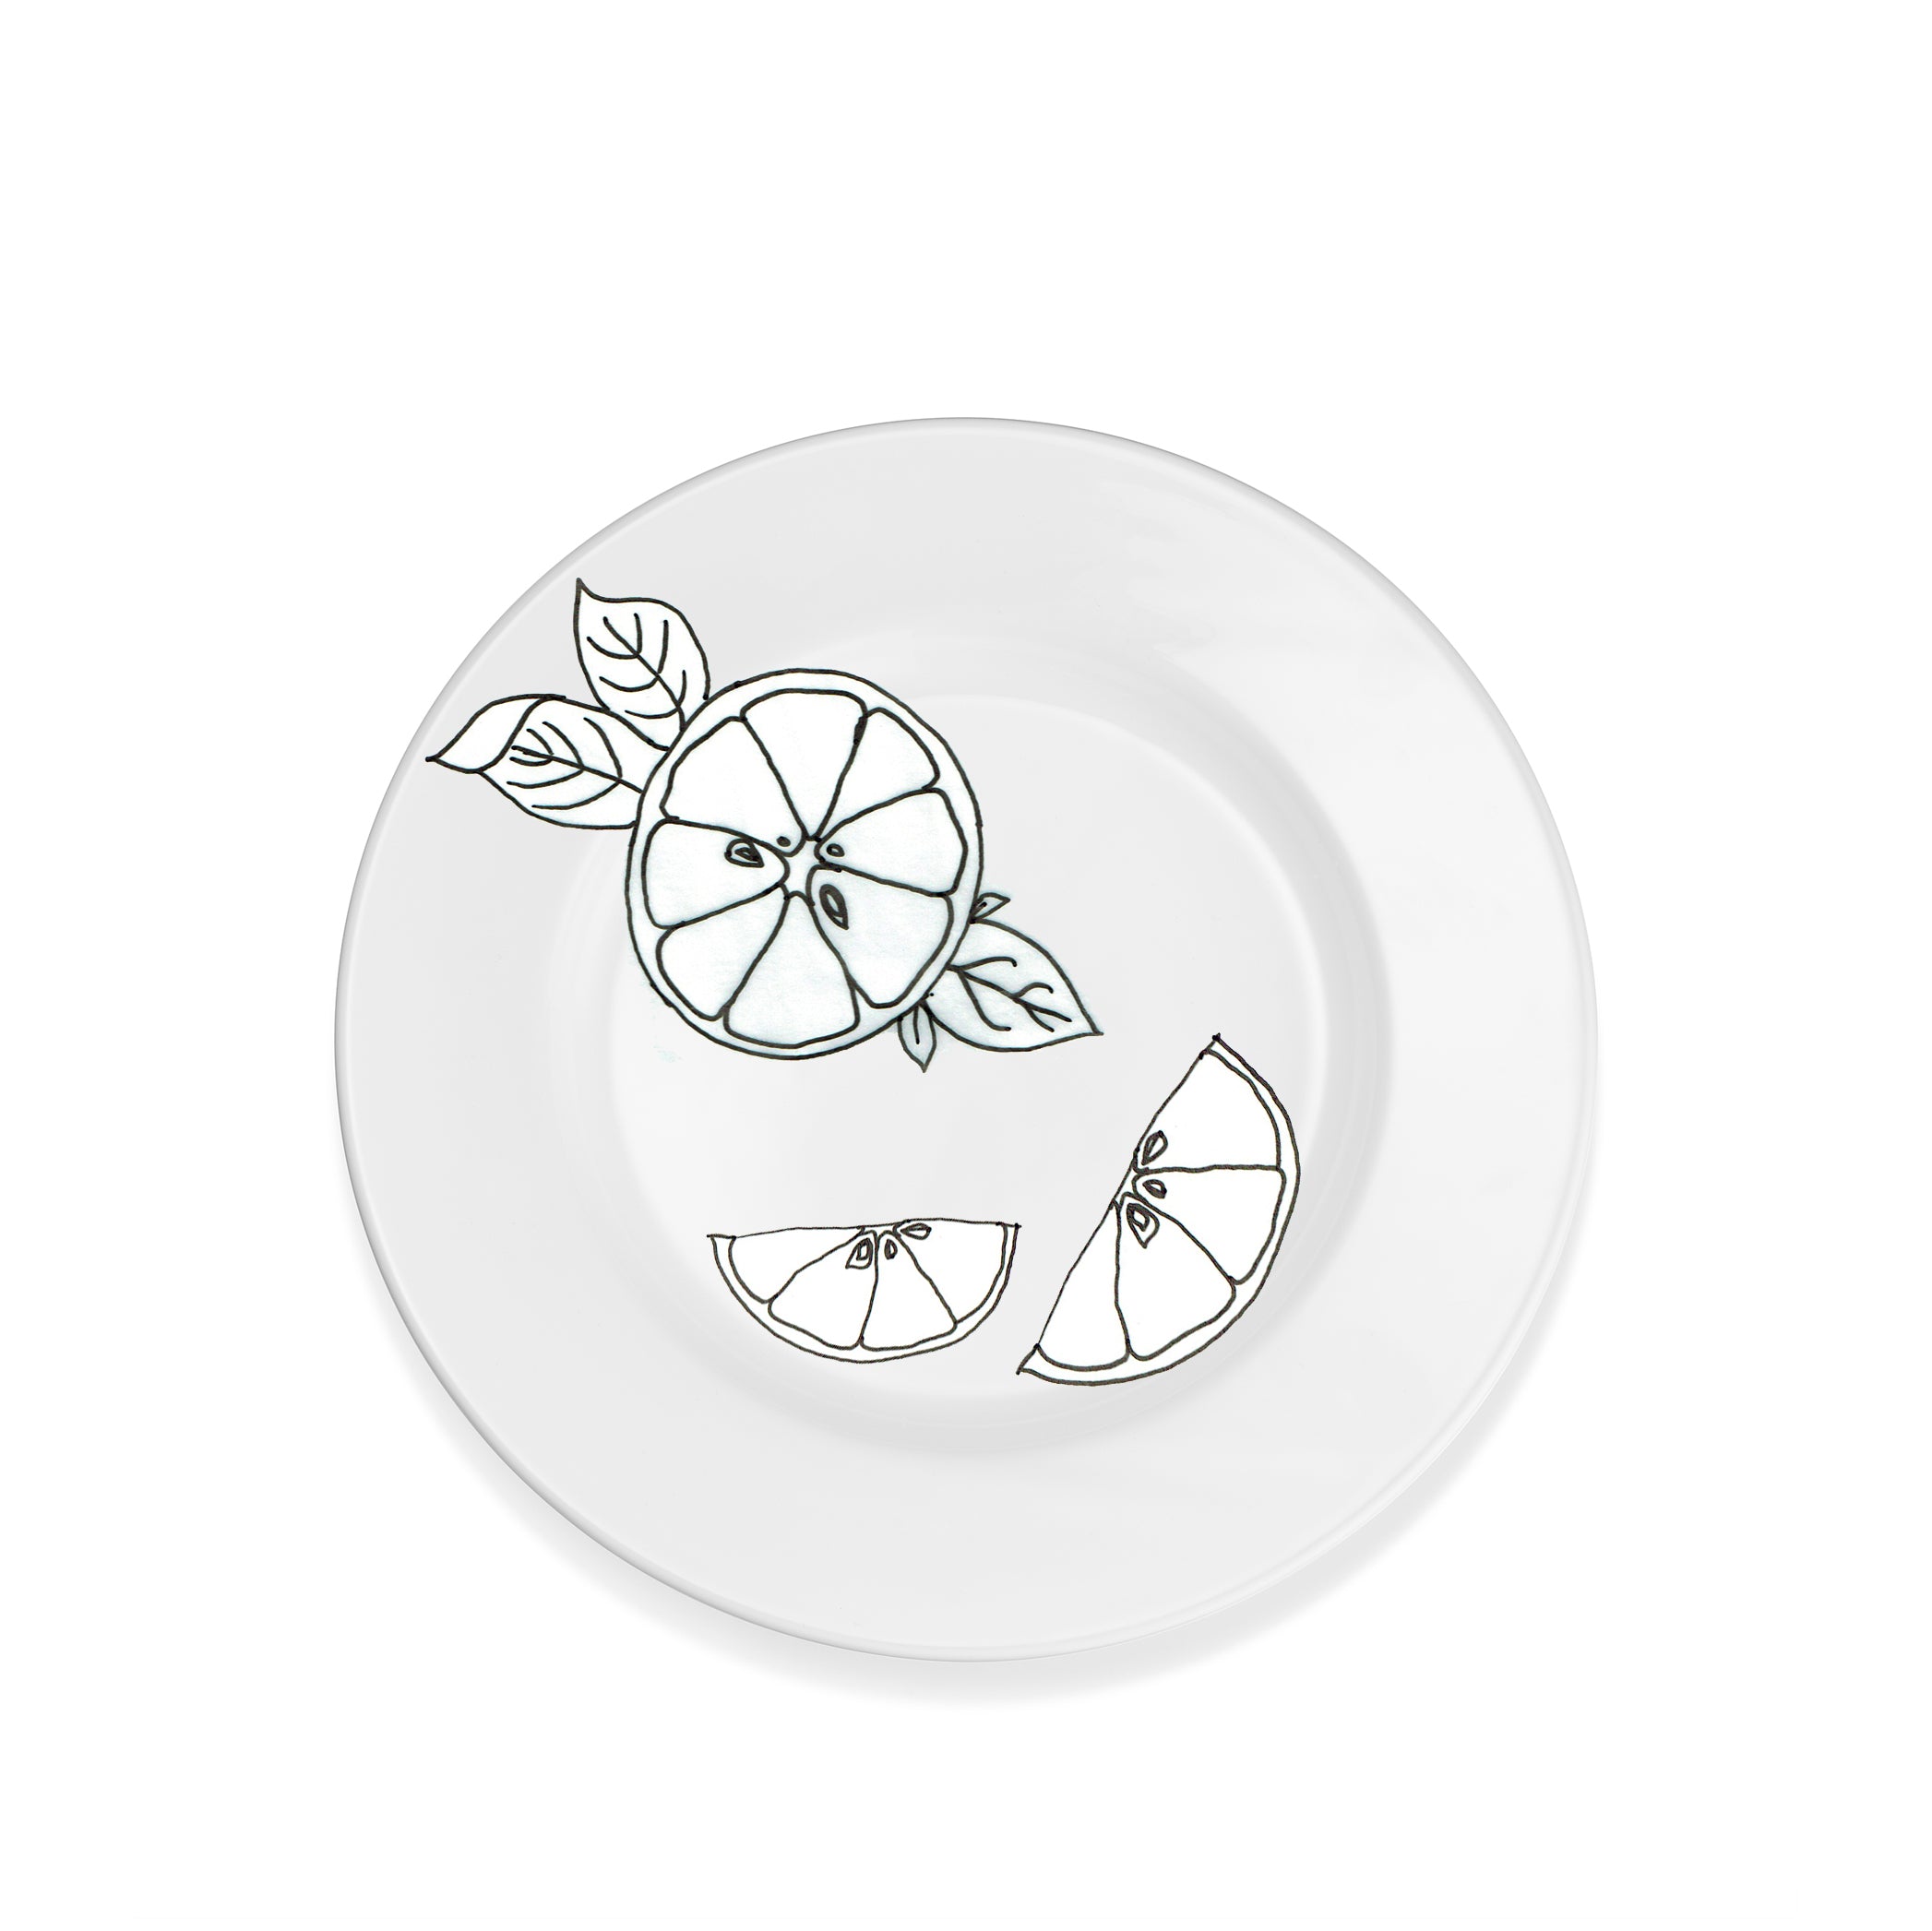 Summerill & Bishop Plain White Rimmed Ceramic Dinner Plate, 28.5cm